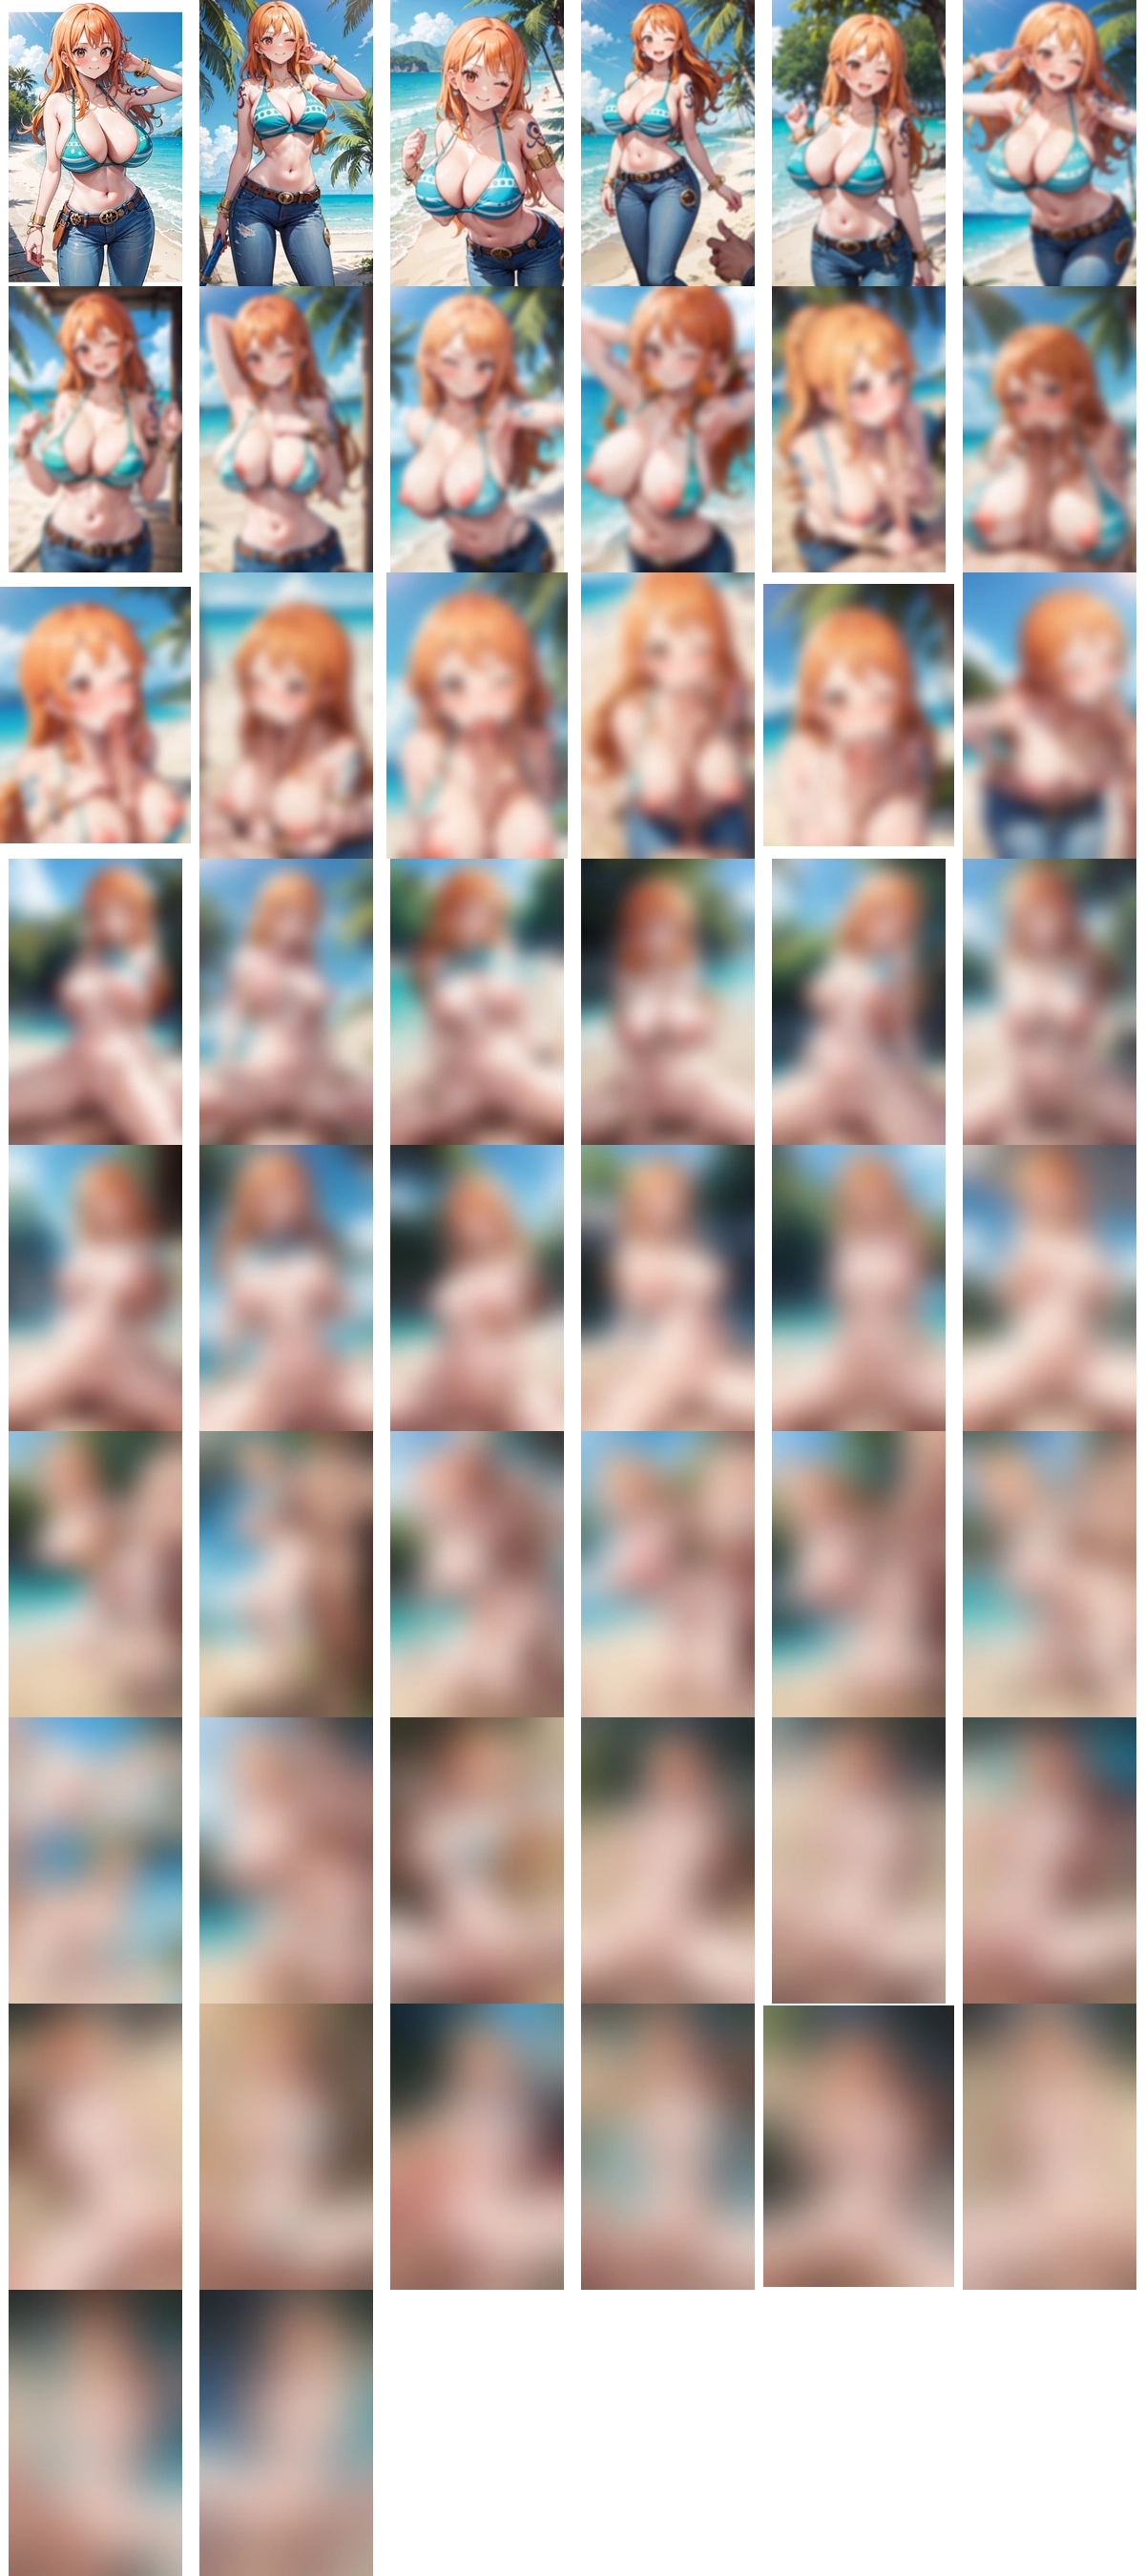 ワンピース ナミ 1 のAIエロ画像 50pic